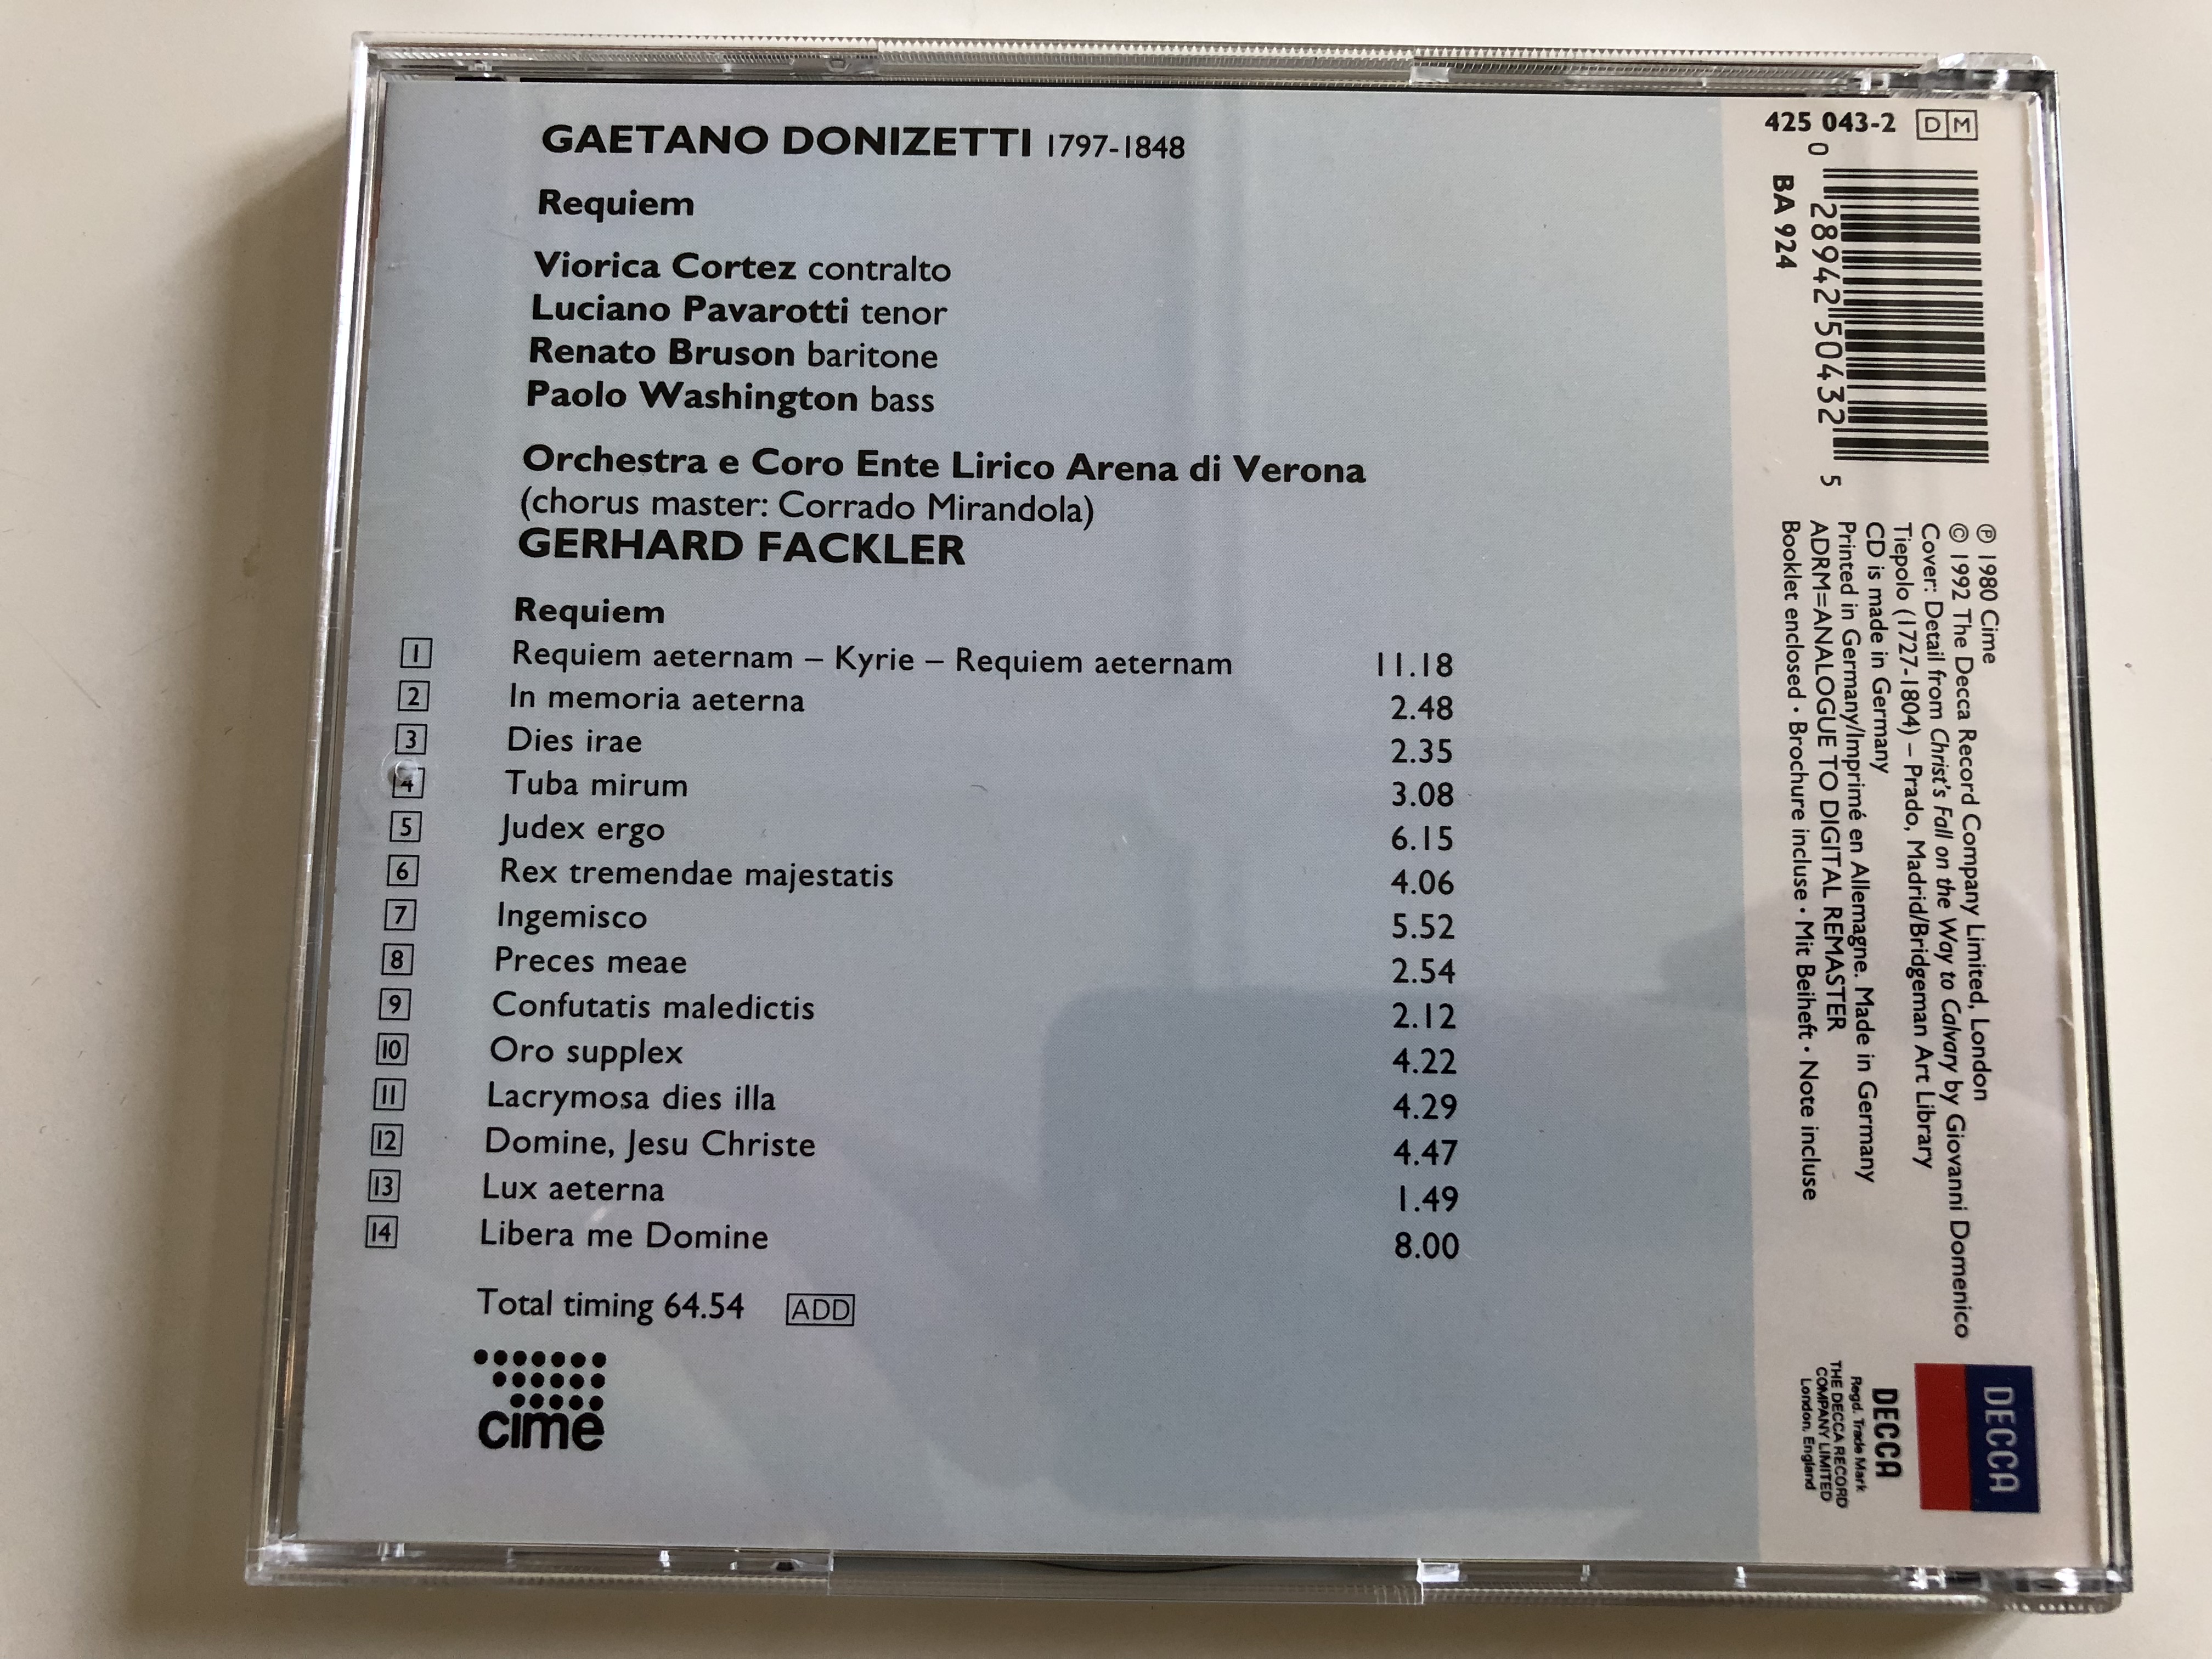 gaetano-donizetti-requiem-pavarotti-bruson-cortez-washington-orchestra-e-coro-dell-arena-di-verona-conducted-by-gerhard-fackler-decca-ovation-audio-cd-1992-425-043-2-4-.jpg